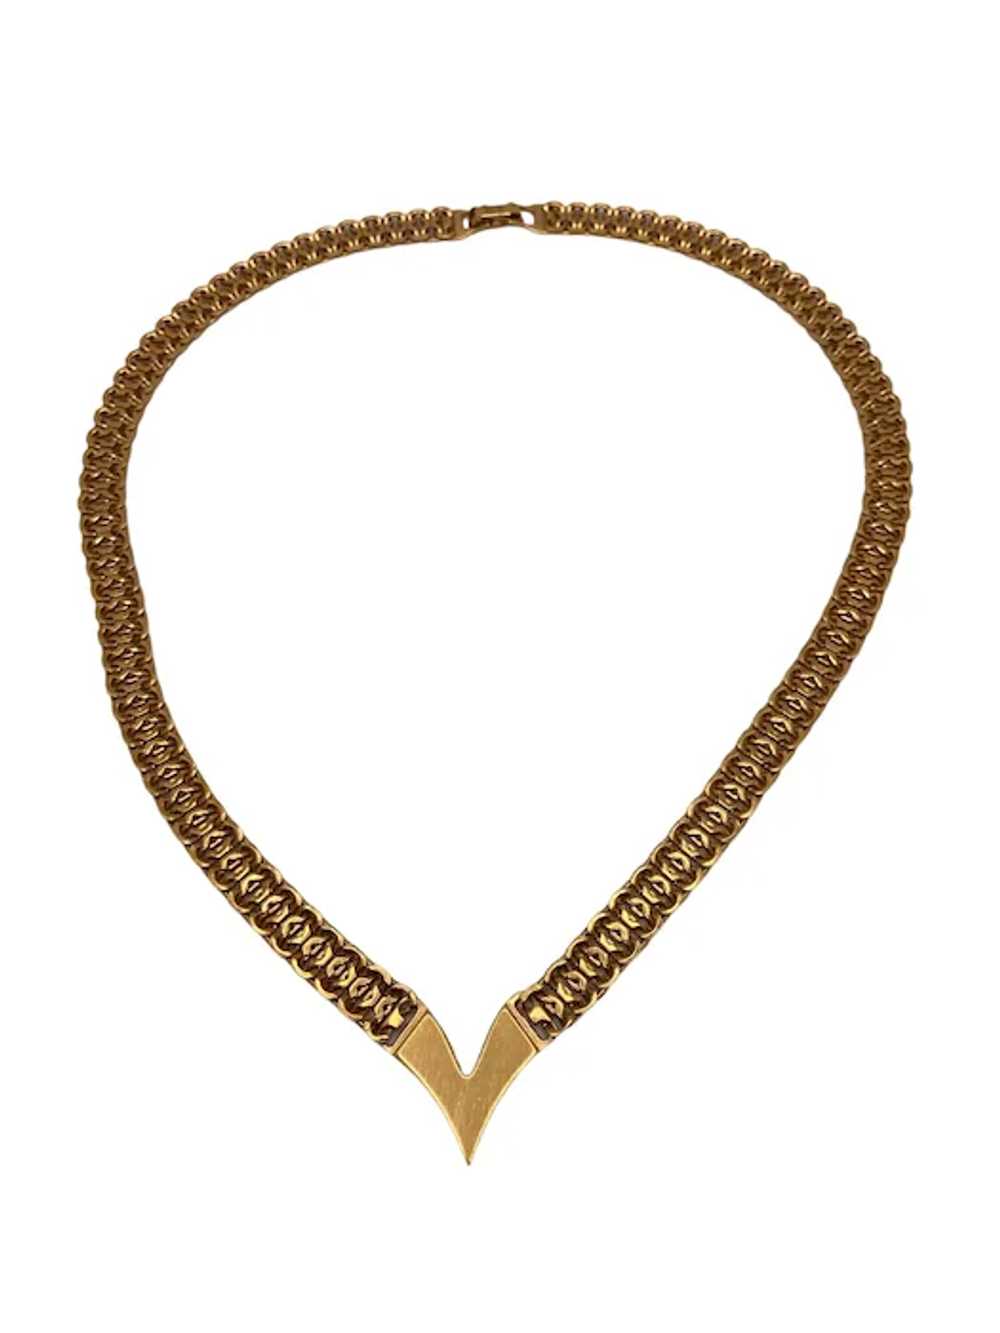 Vintage Napier Gold Tone Chevron Necklace - image 2